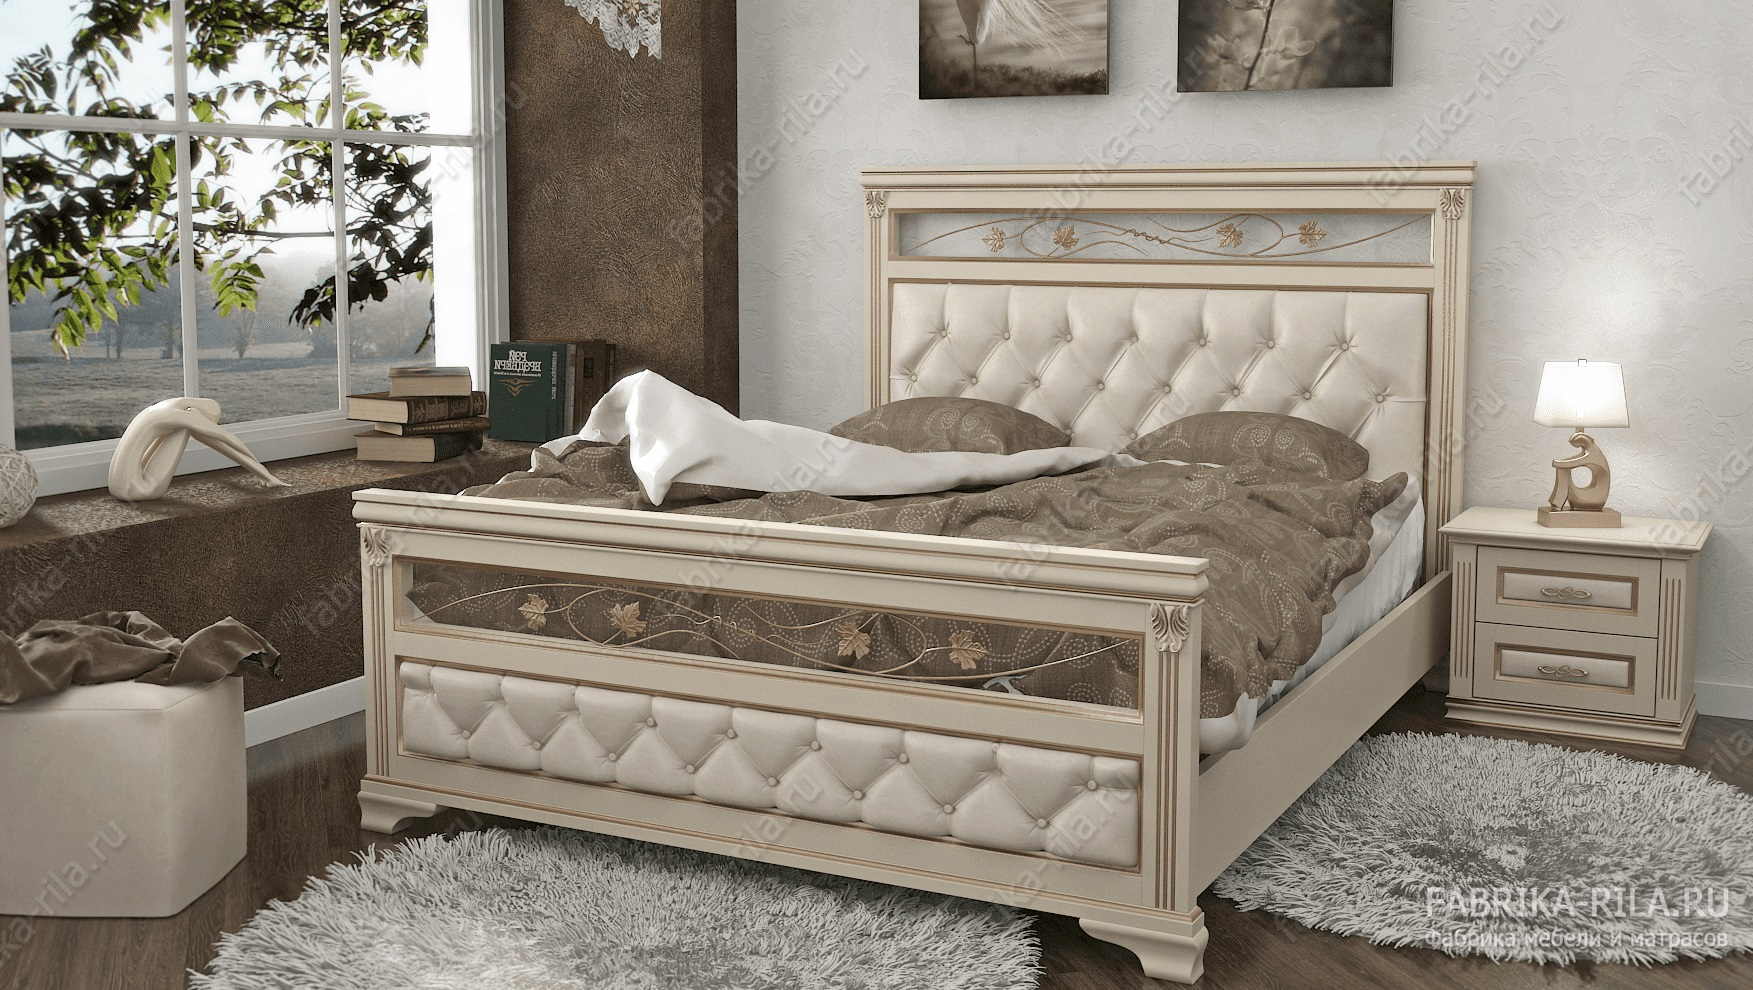 Кровать Lirona 3-MV — 90x190 см. из сосны